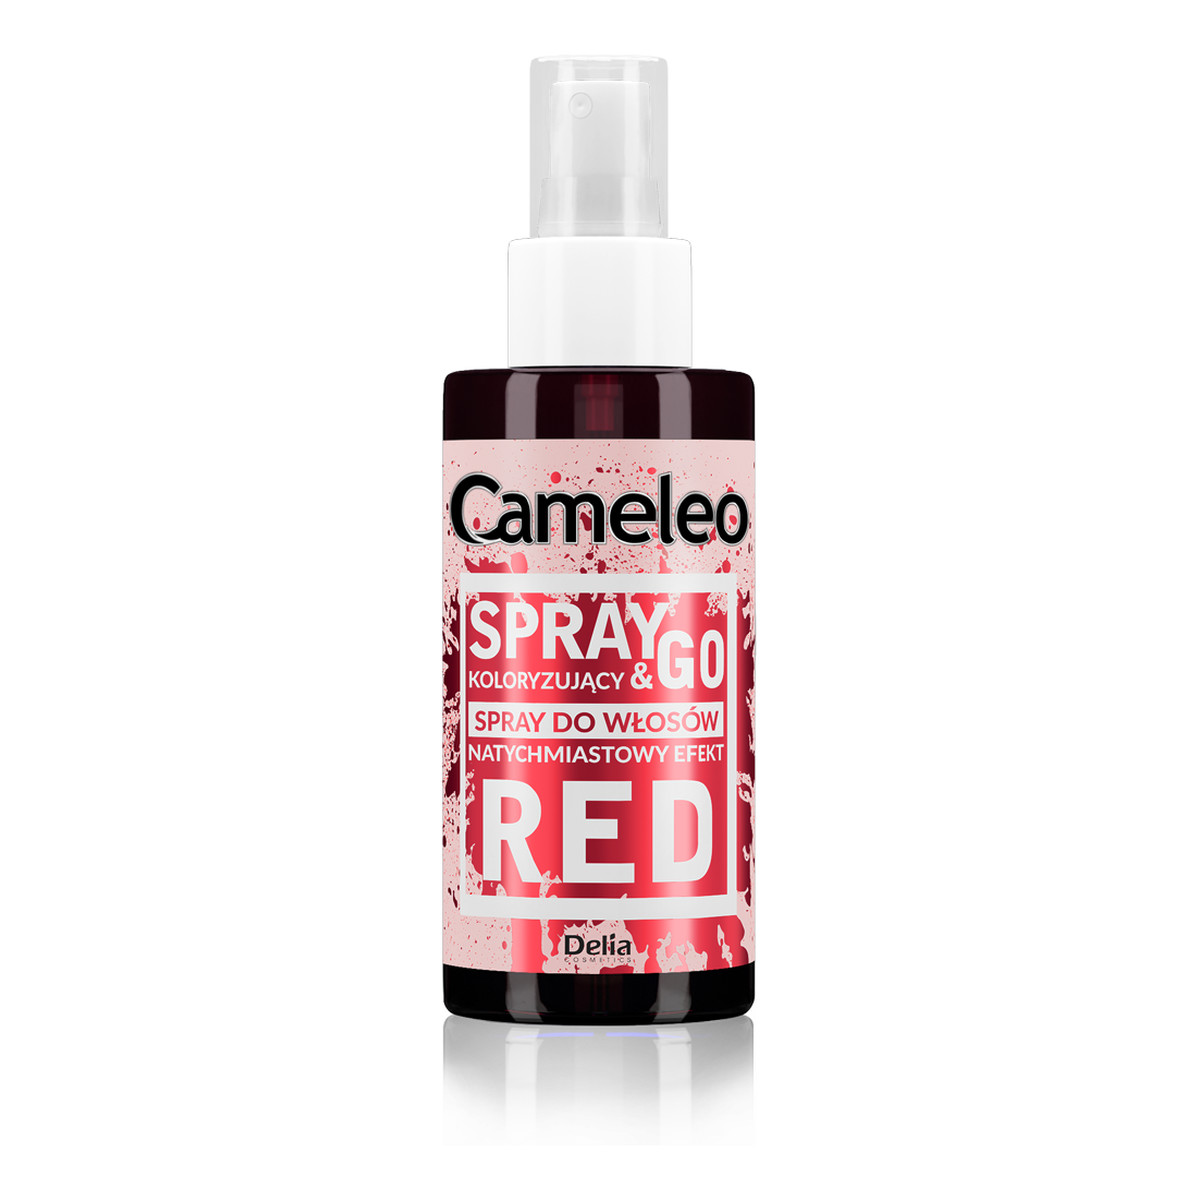 Cameleo Spray & Go Spray koloryzujący do włosów 150ml